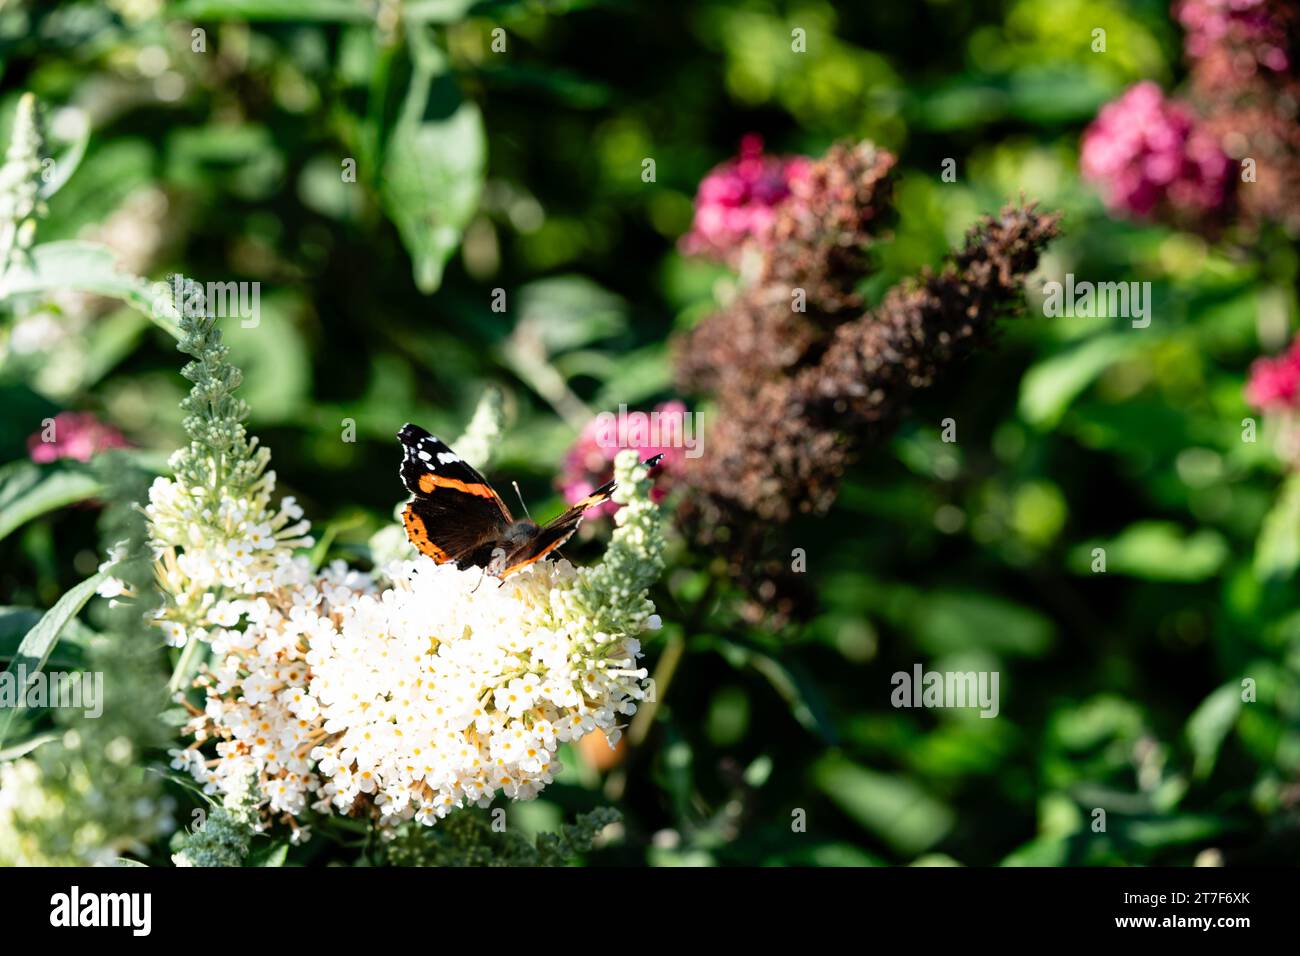 insects on the butterfly bush Buddleja davidii Stock Photo